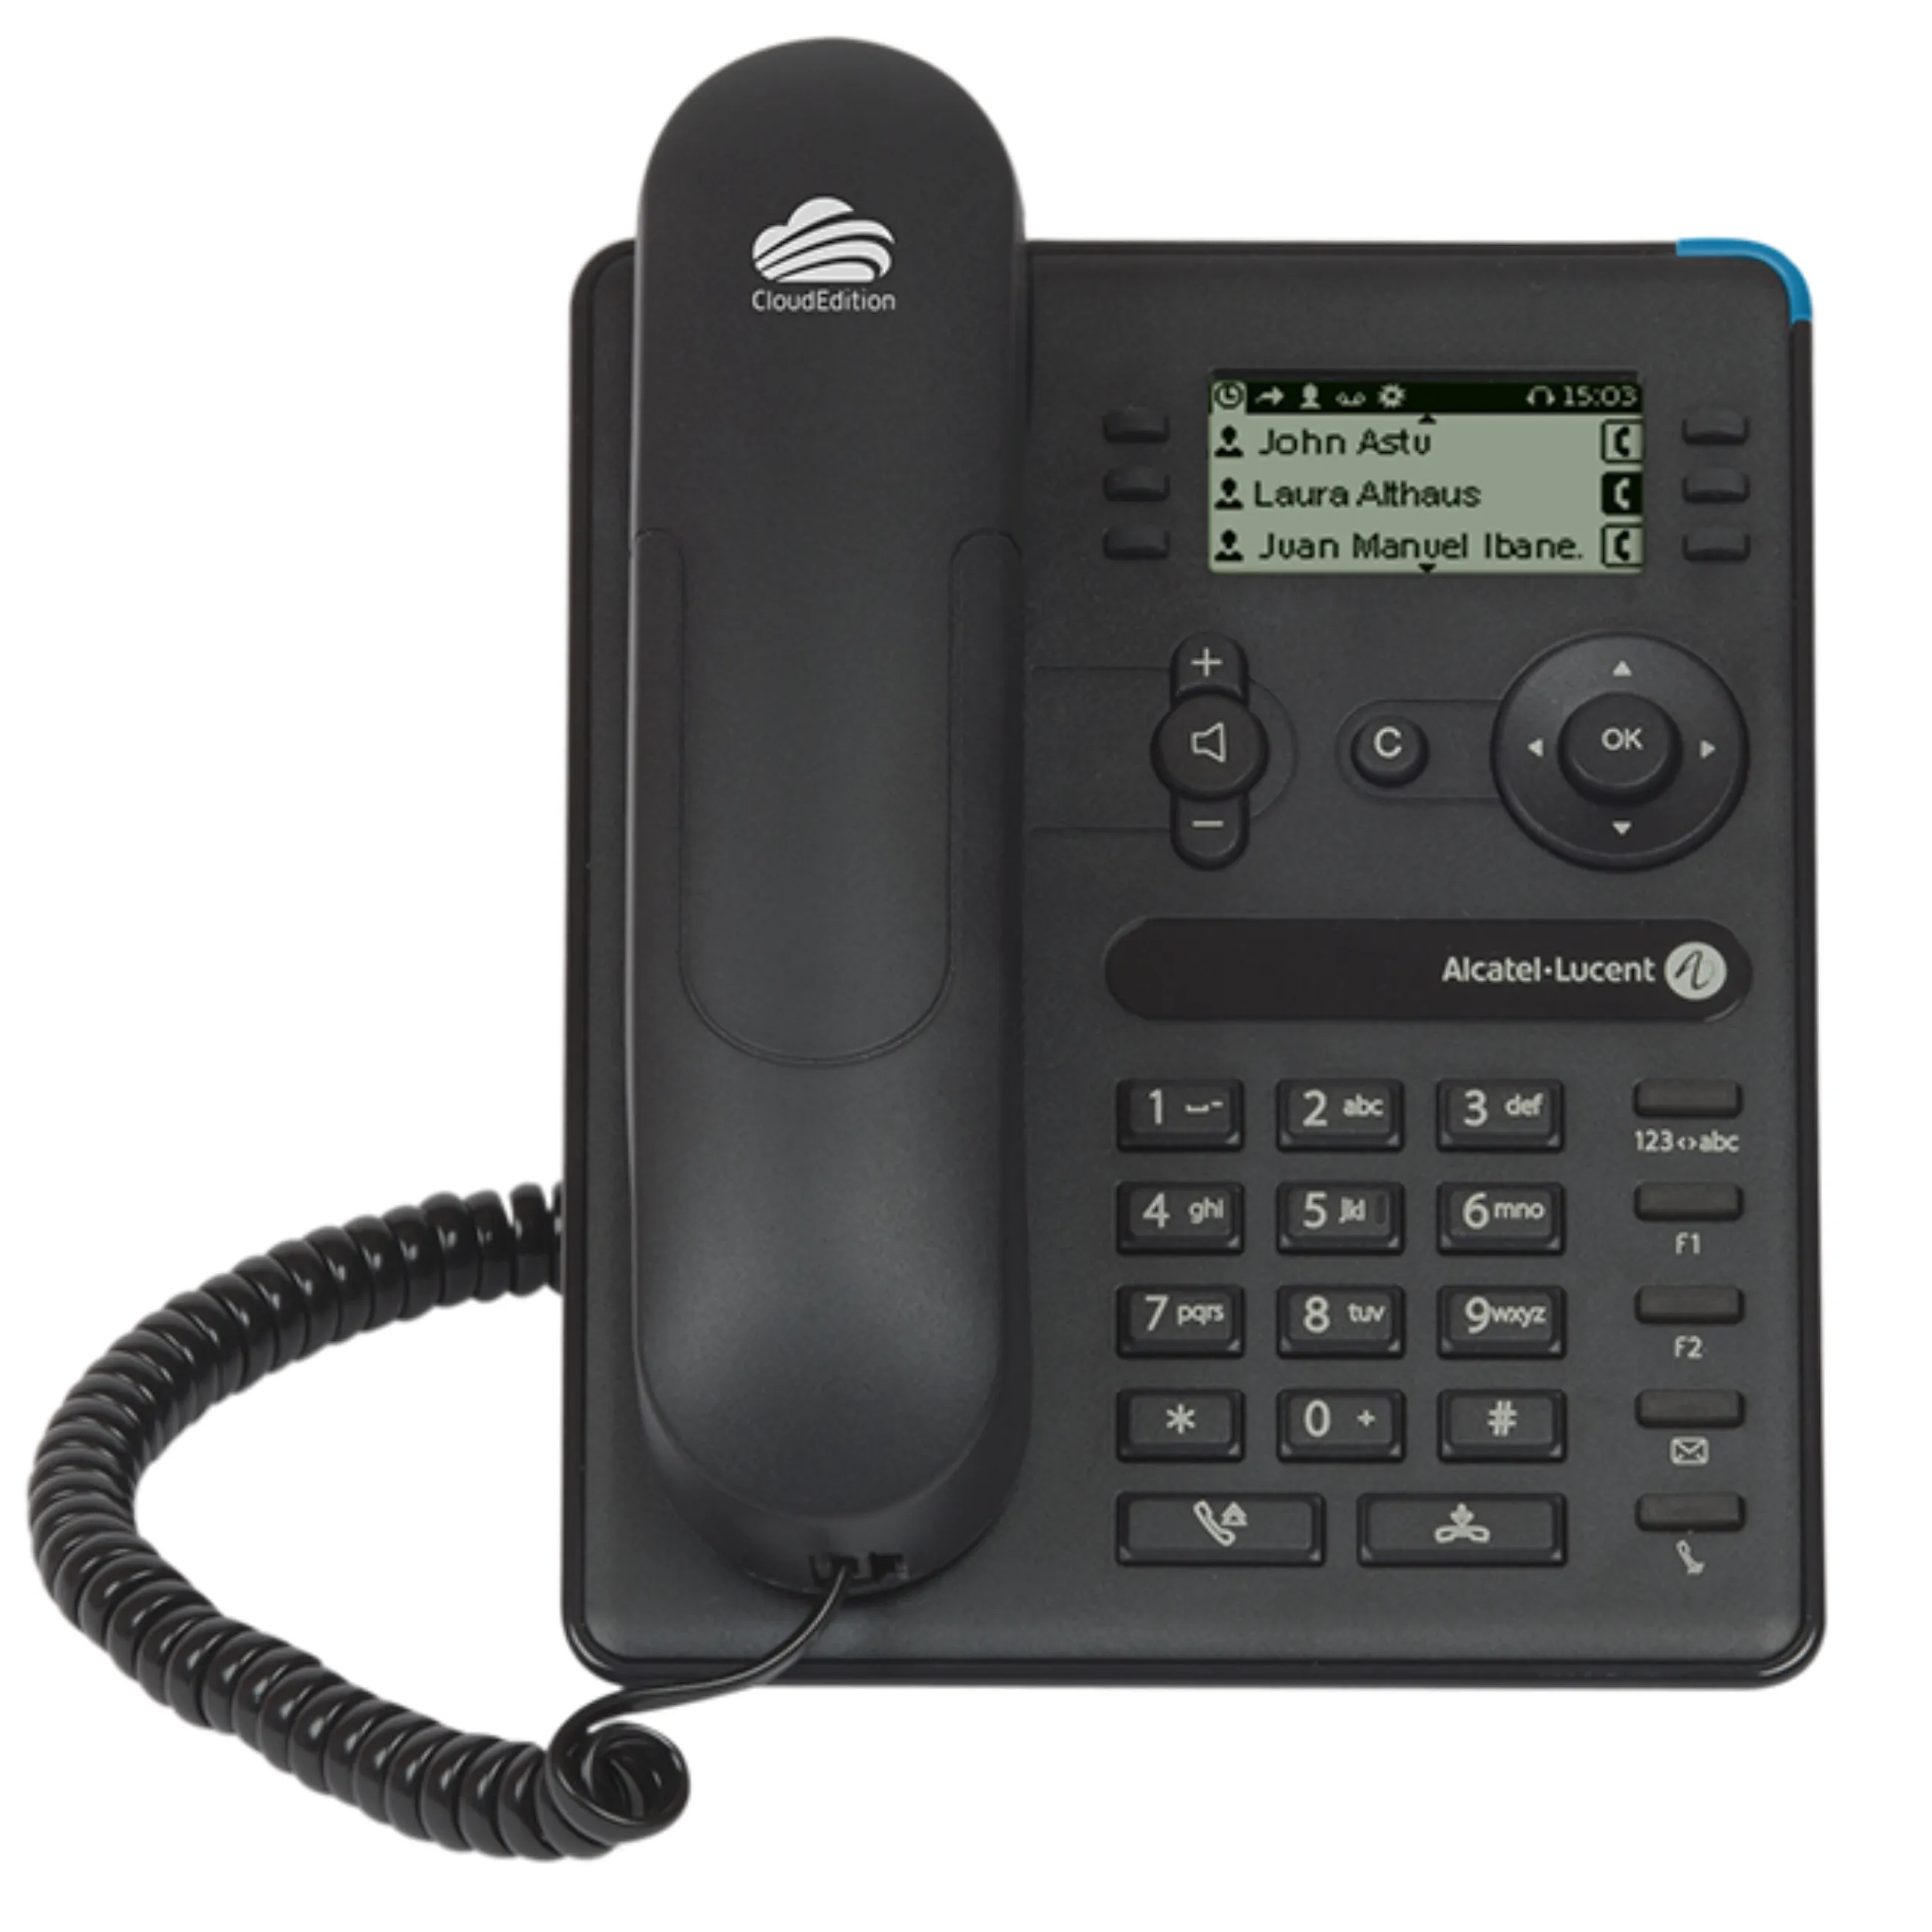 ALE 엔터프라이즈 8008/8008G 유선 VoIP B/w 디스플레이 회색 IP 전화